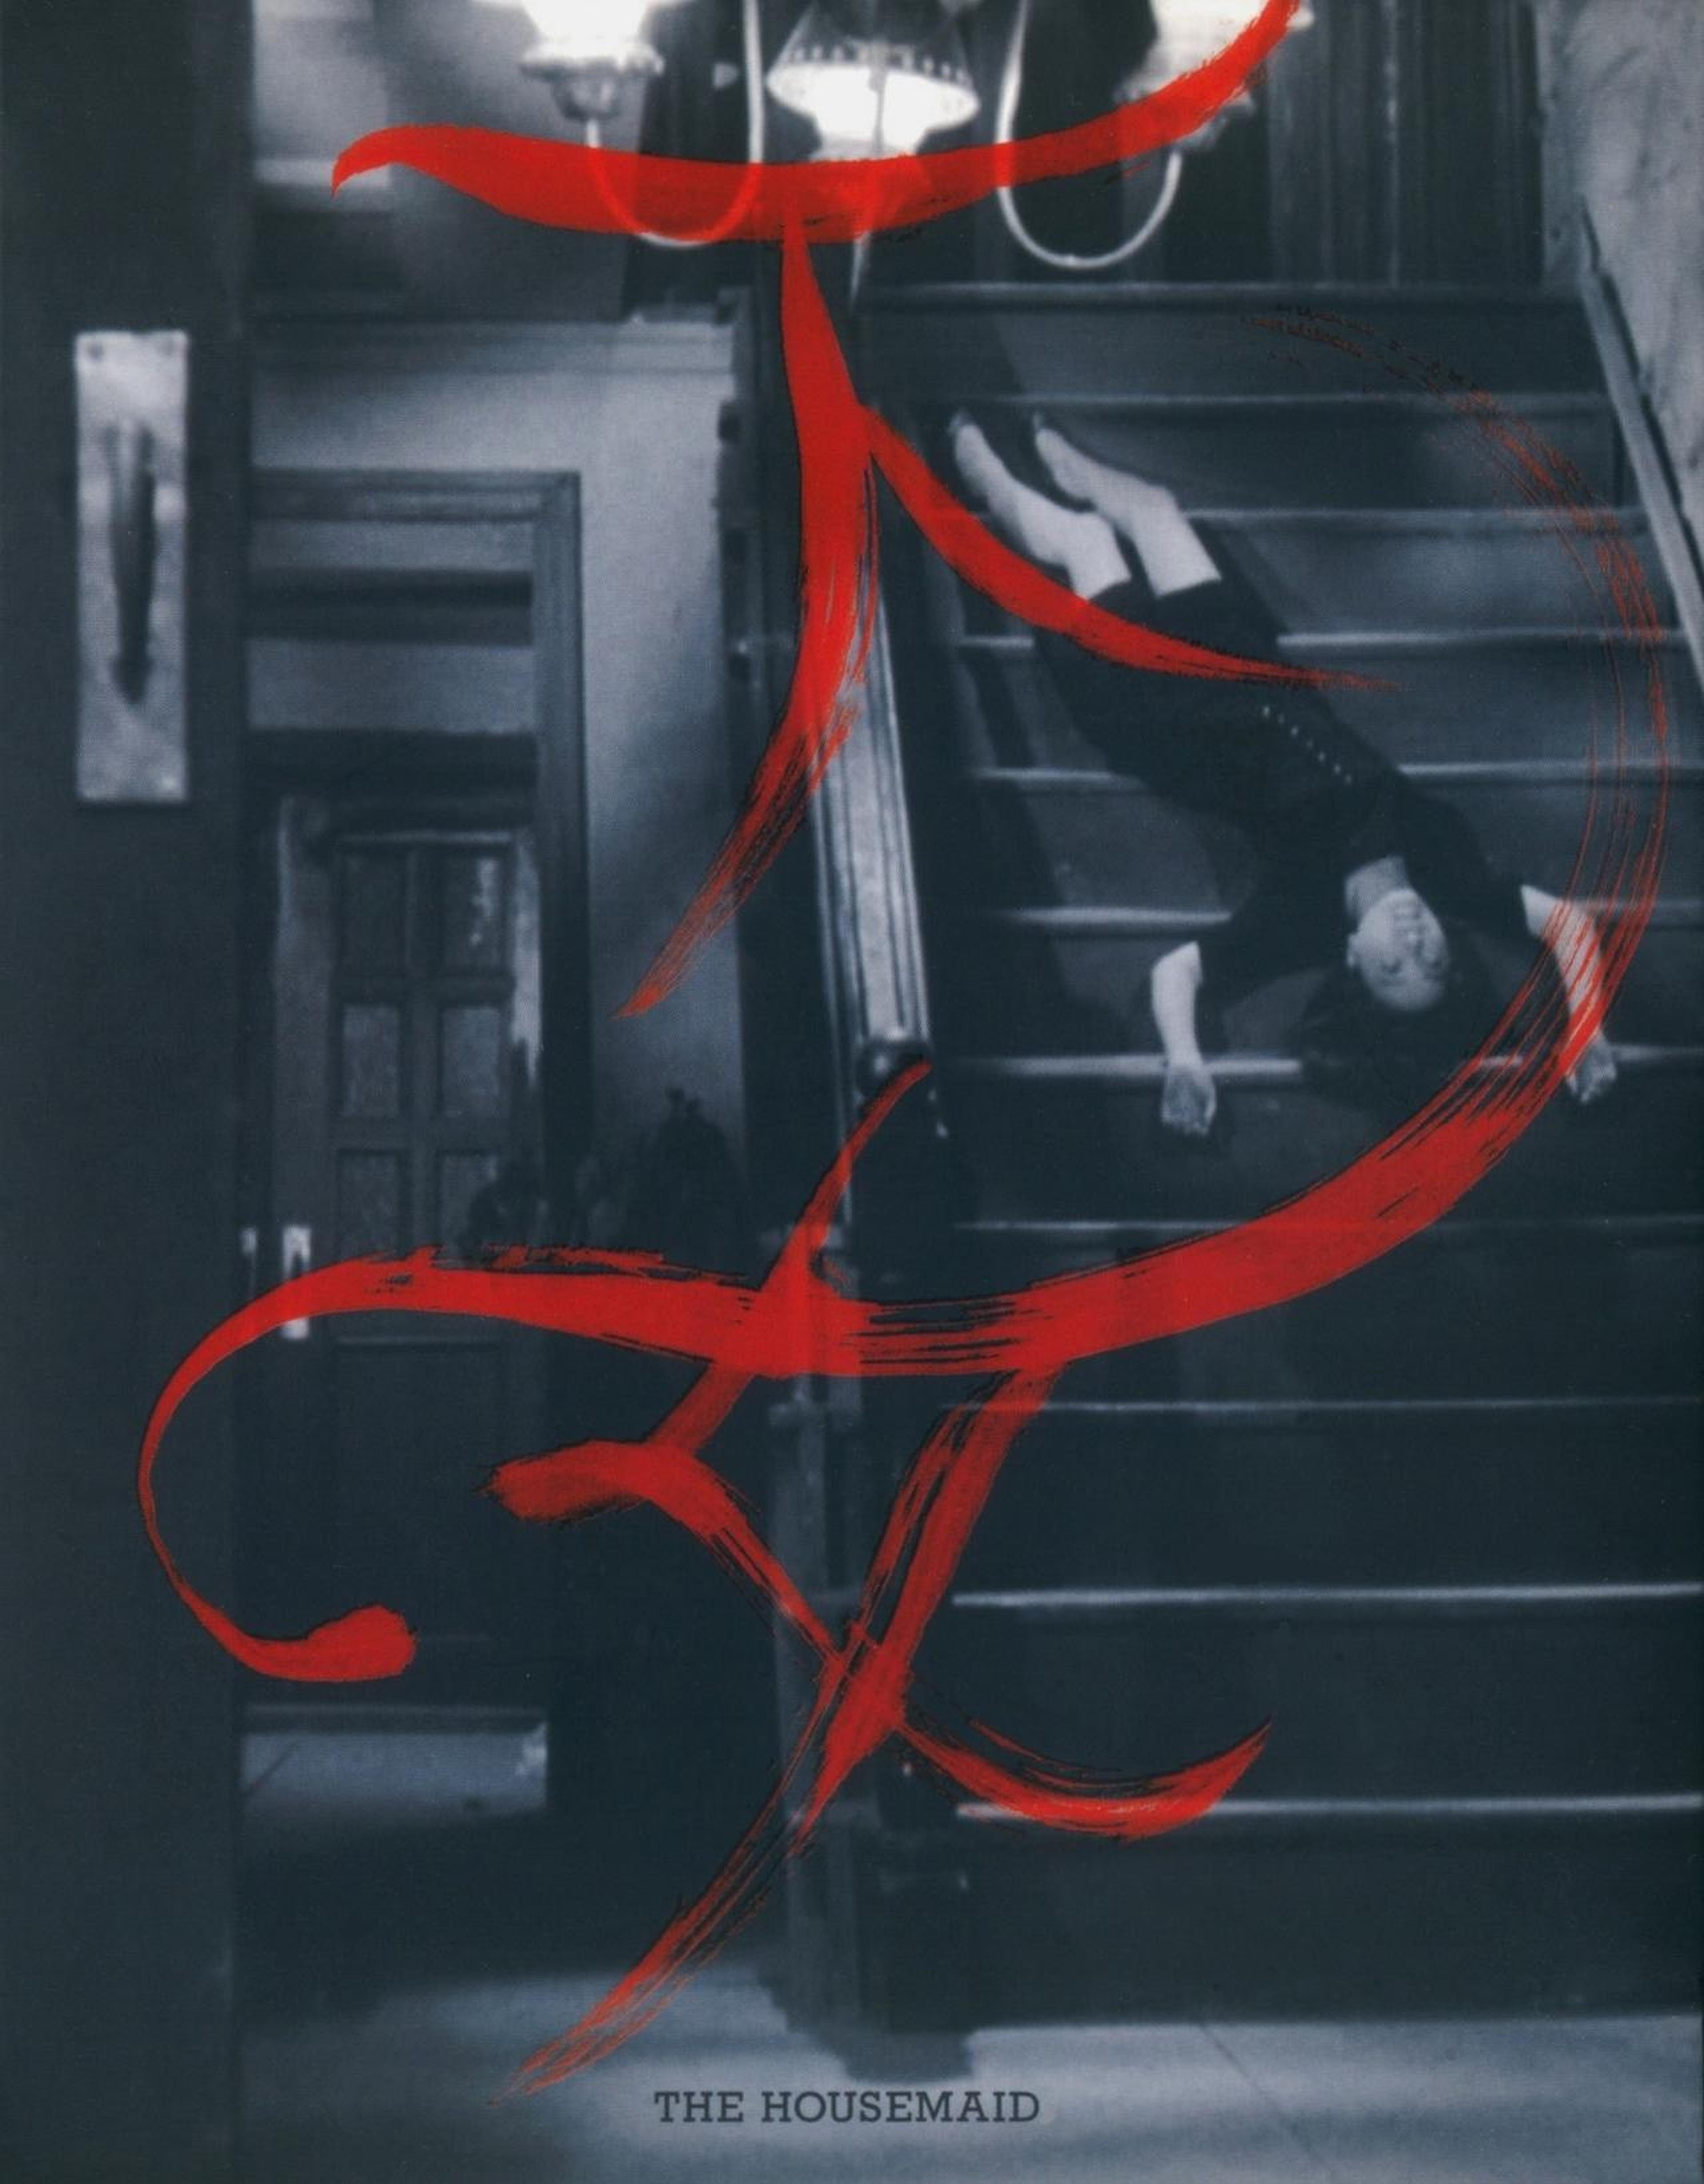 【1960-1970】《下女》（1960）导演金琦泳。导演中期代表作，也是他的“下女三部曲”的第一部，影片以“楼梯”为线索，将整个房间划分为两层，运用怪异的景别和不和谐的音效带给观众极端的恐怖感。奉俊昊导演的《寄生虫》对于空间概念的运用也借鉴了该片。